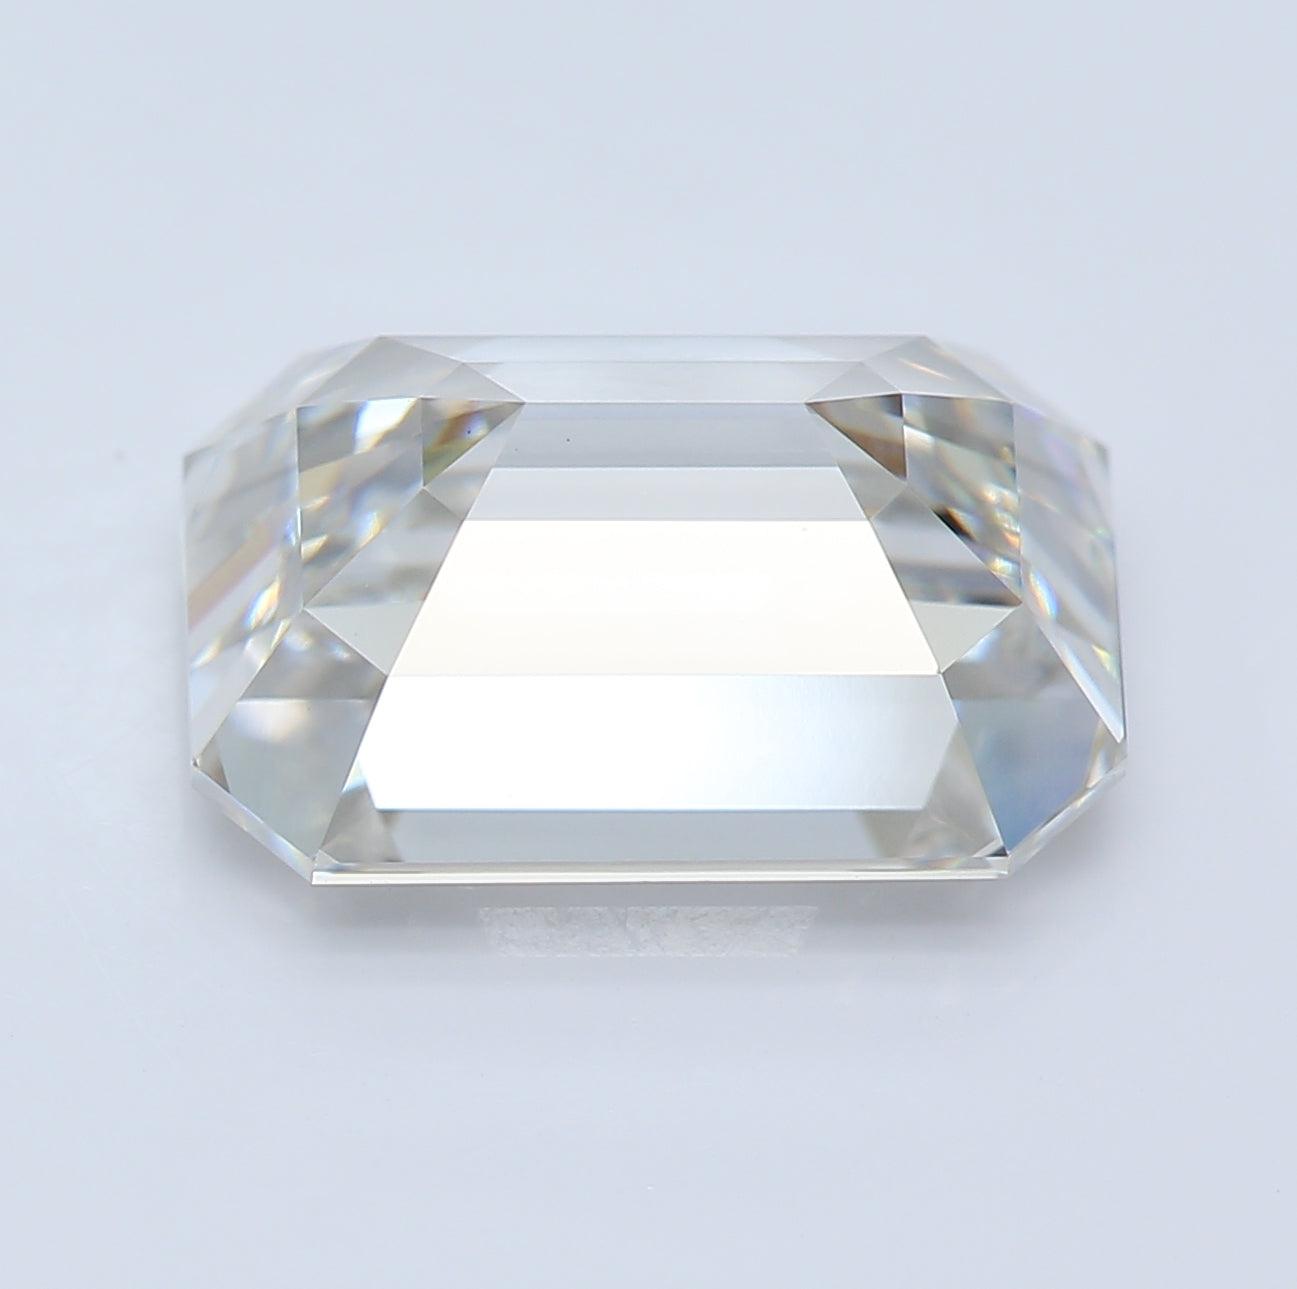 4.01 Carat, Emerald Cut, H Color, VVS2 Clarity Lab Diamond | Loose